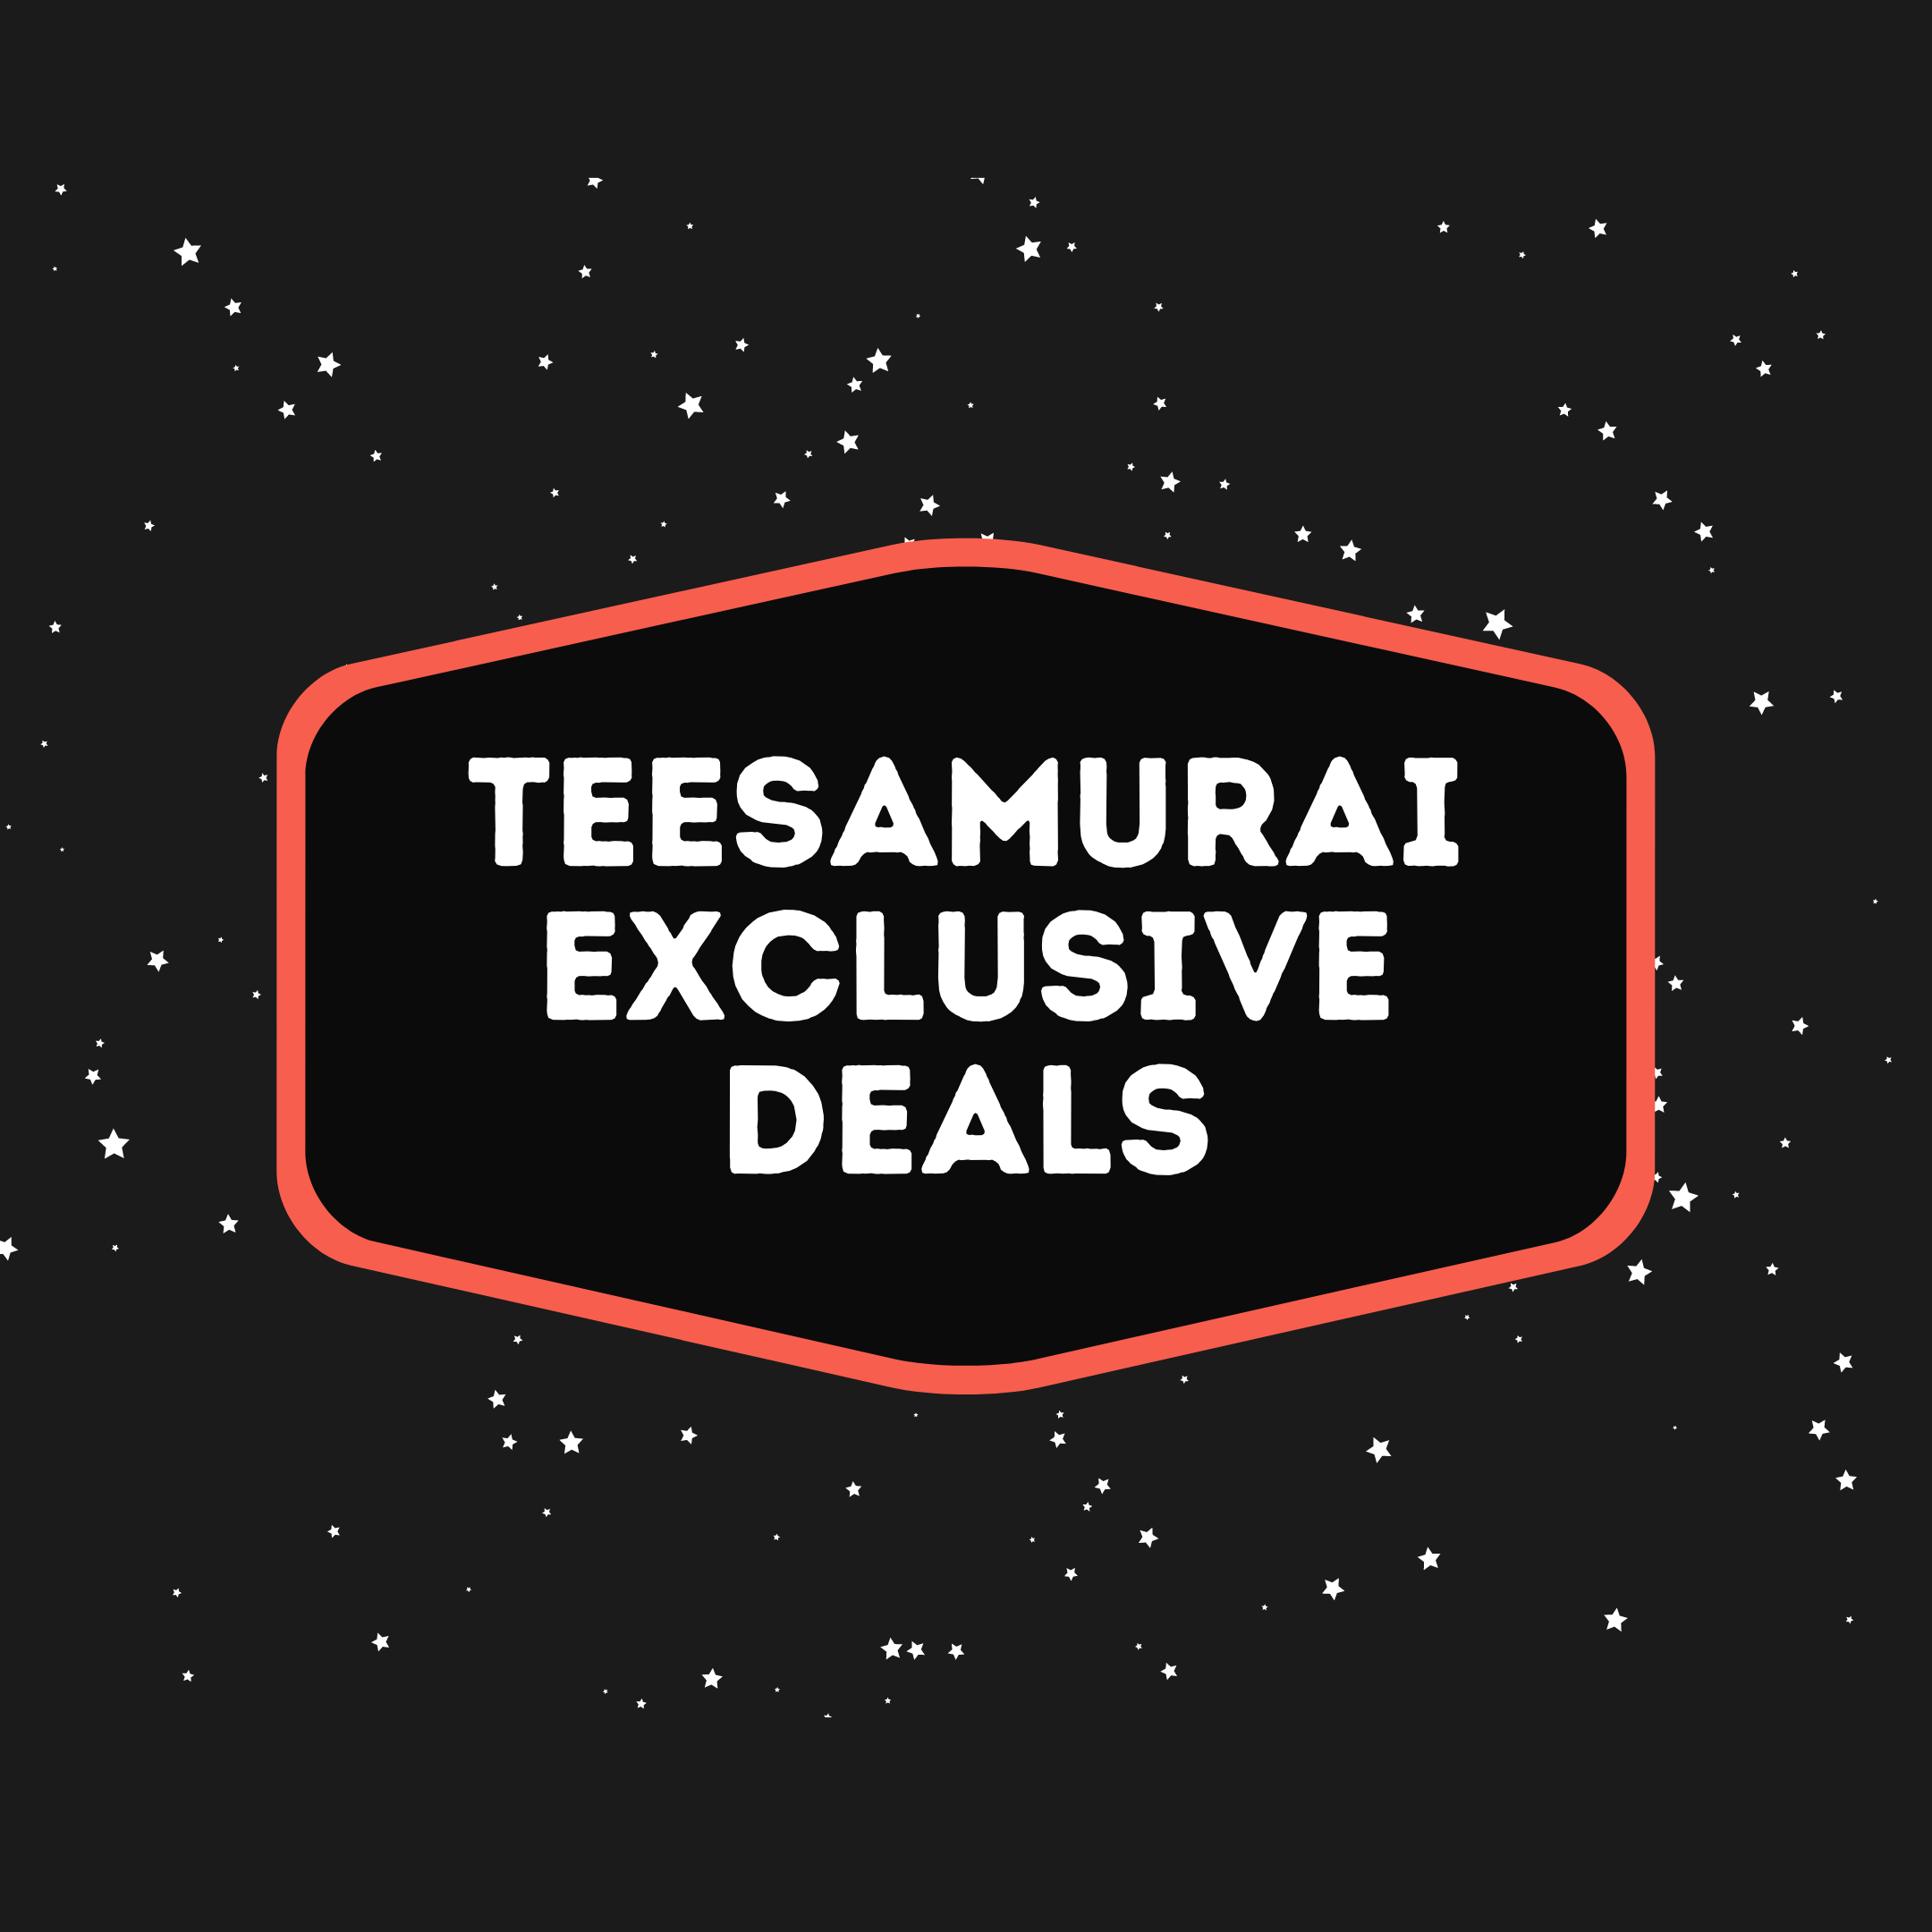 teesamurai-exclusive-deals